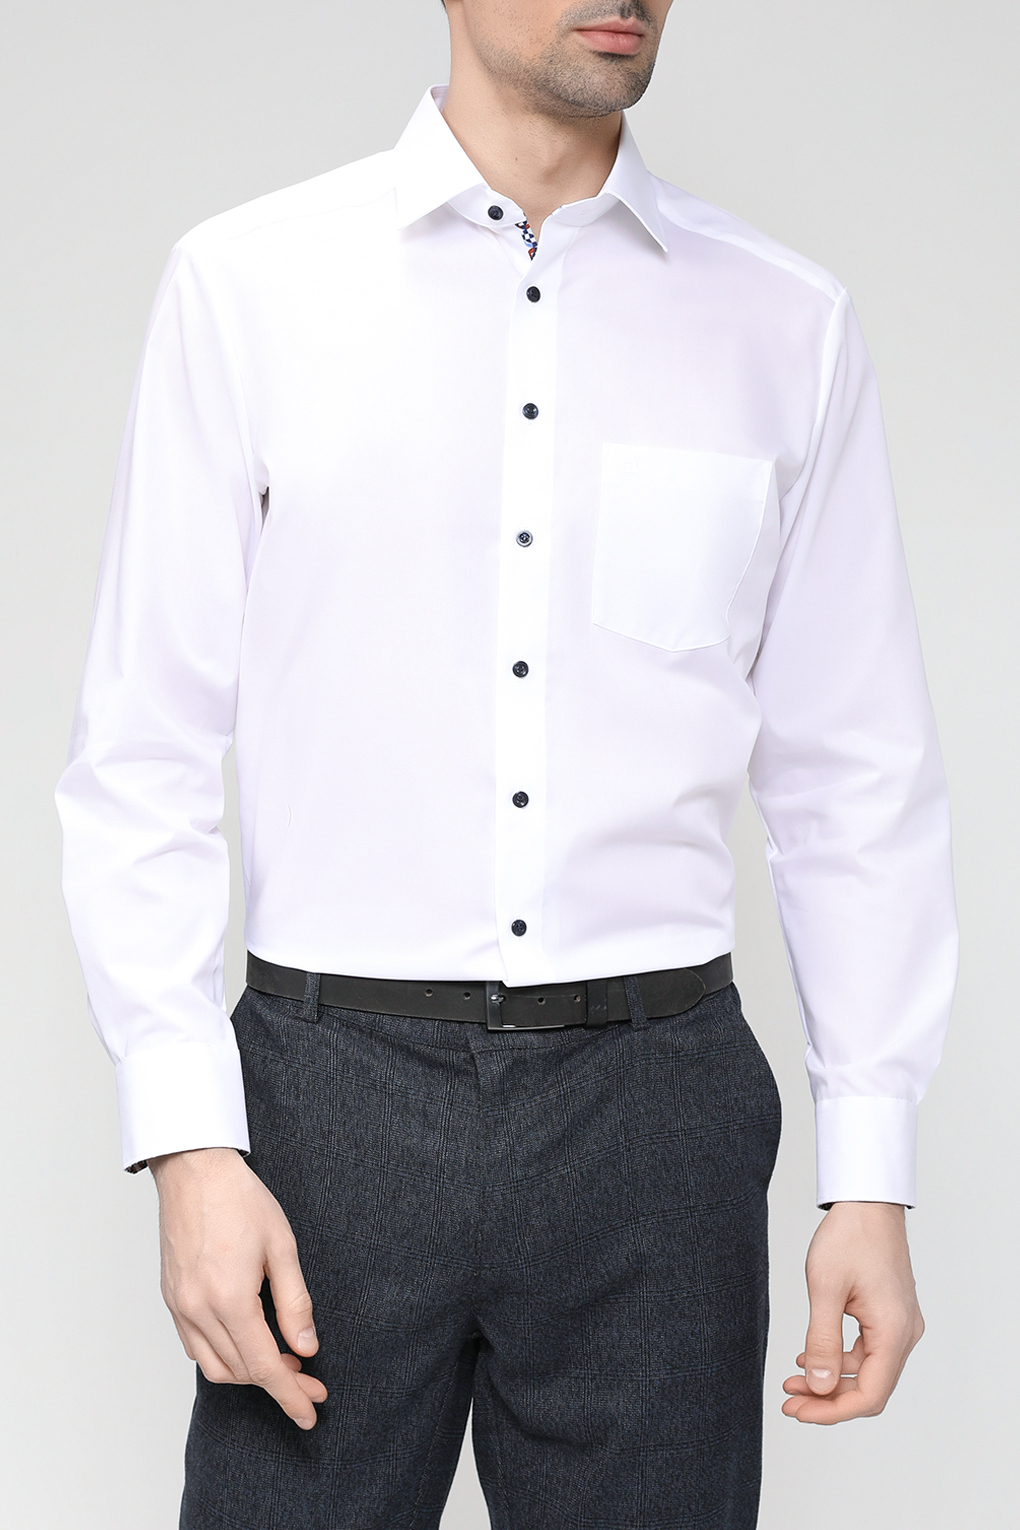 Рубашка мужская Olymp 8622/34 белая 45